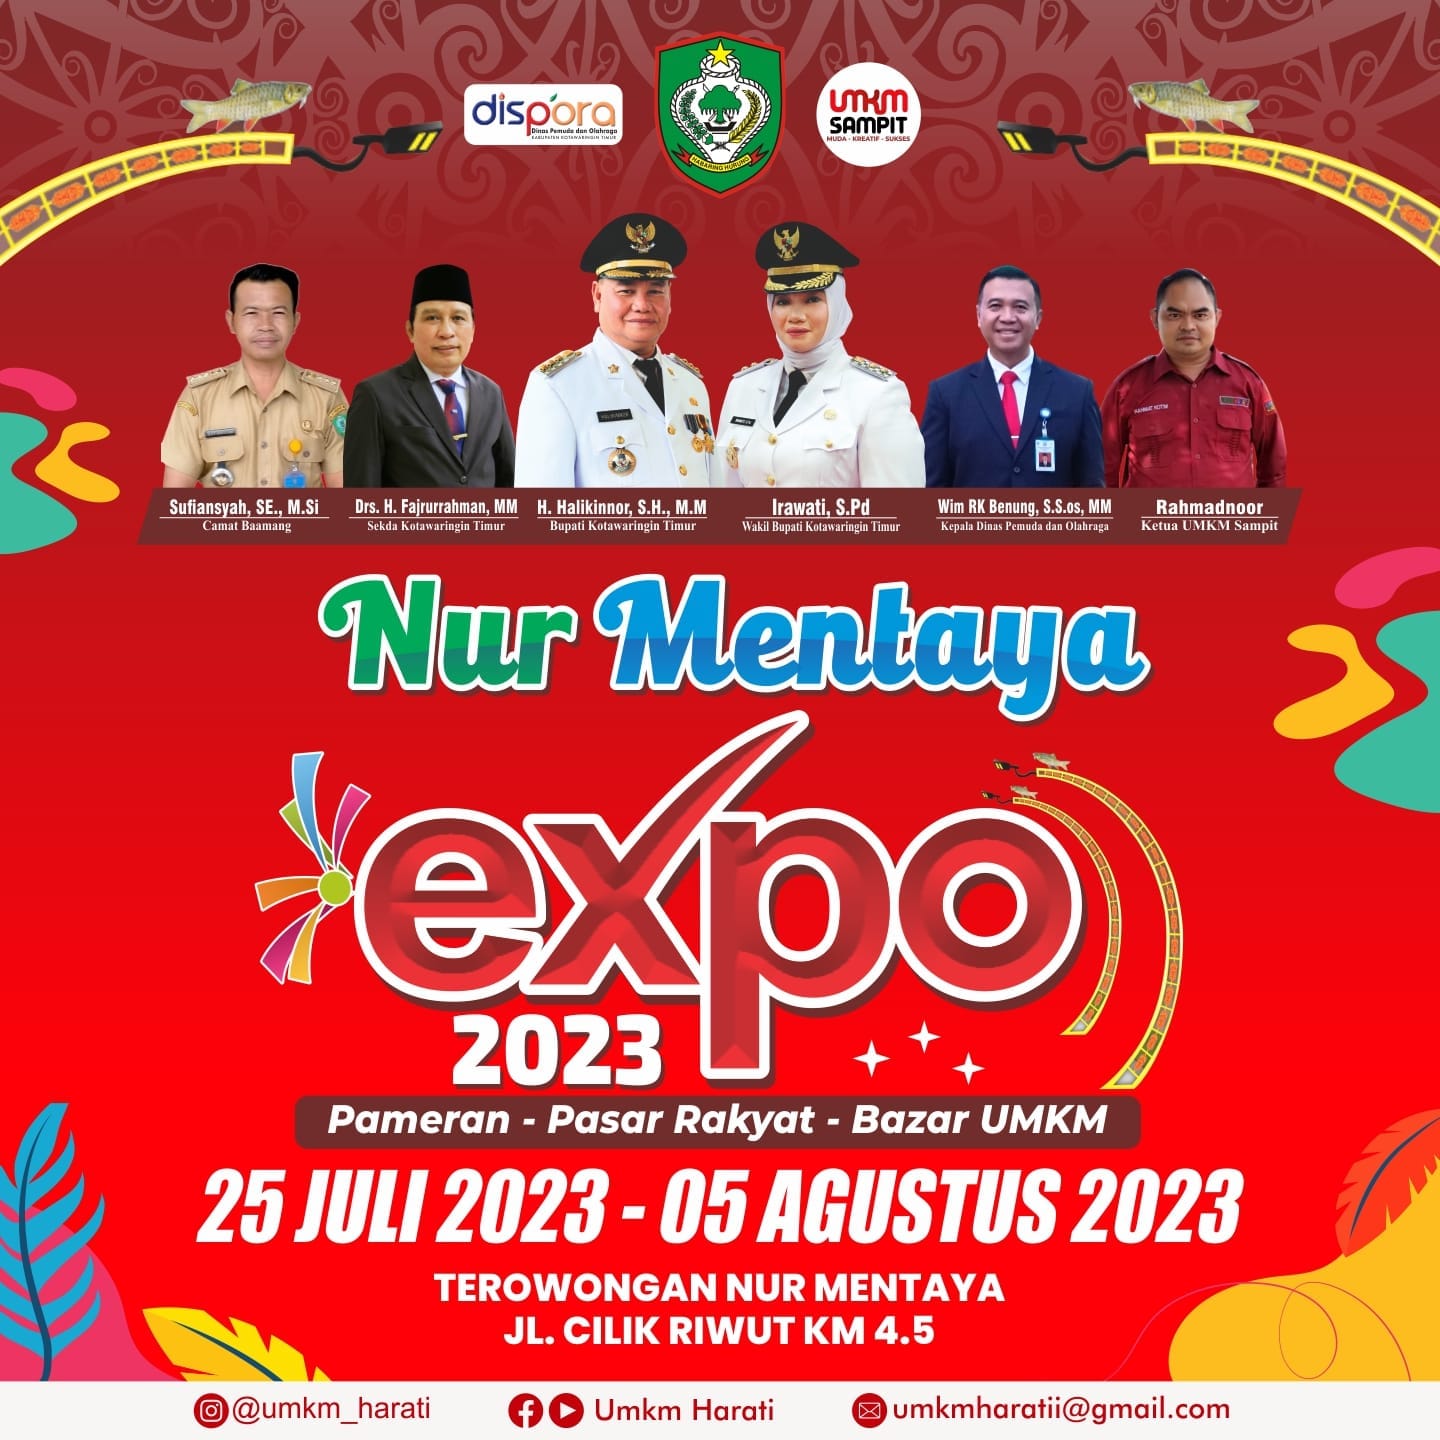 Nur Mentaya Expo 2023 Sampit